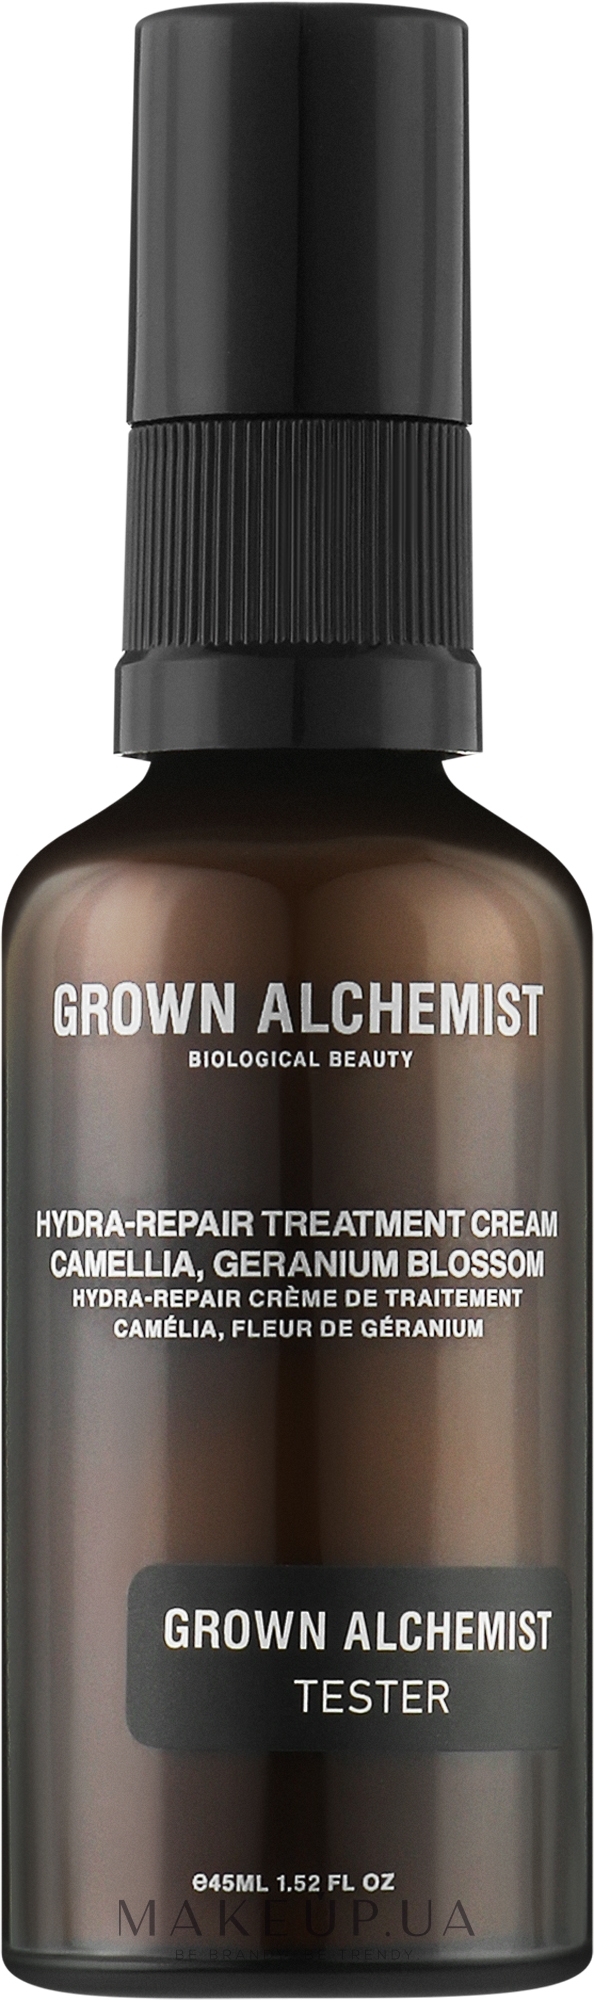 Крем для Alchemist обличчя ціною купити Grown за Camellia, Hydra-Repair (тестер): - Україні Treatment Blossom Geranium в Cream найкращою